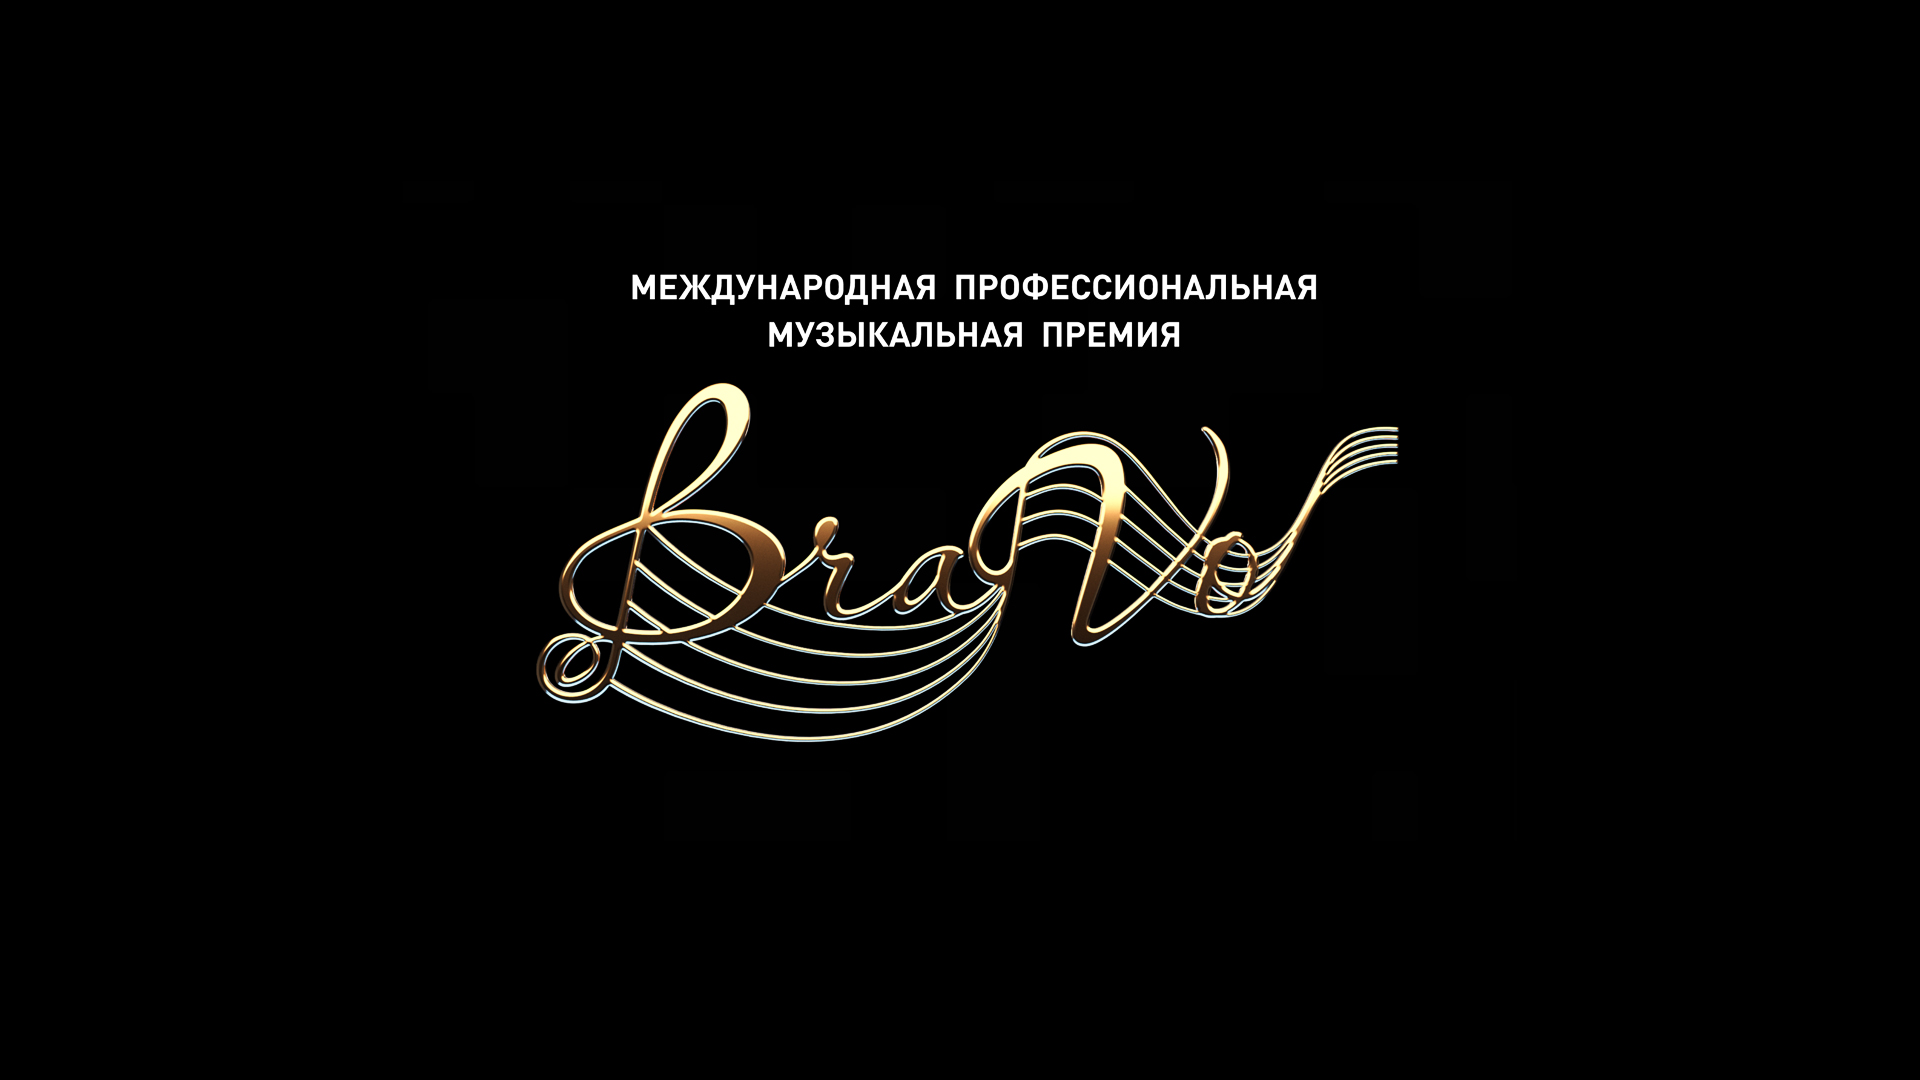 VI церемония вручения Международной профессиональной музыкальной премии BraVo в сфере классического искусства